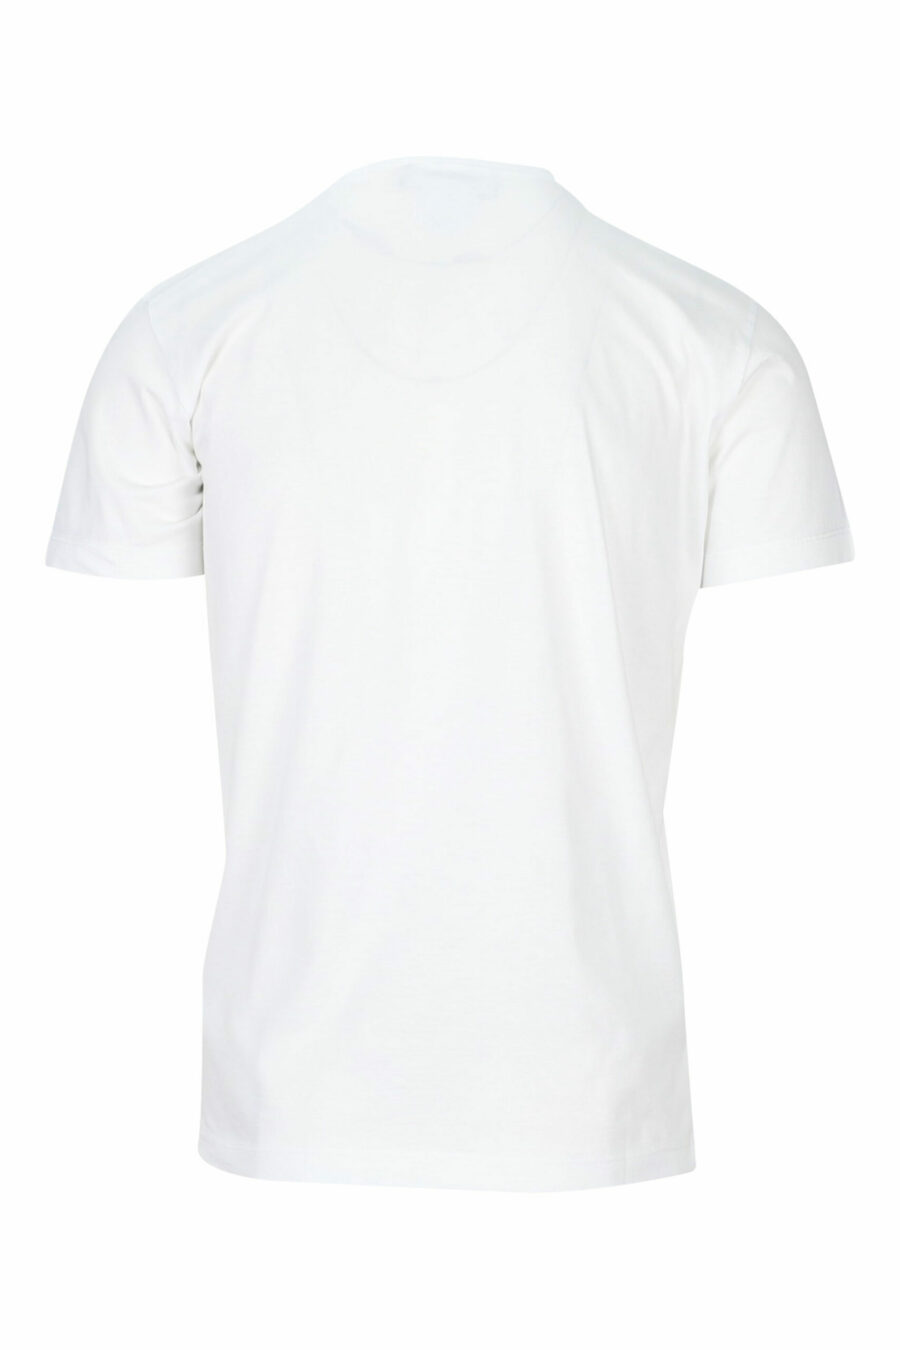 T-shirt branca com maxilogo branco e azul com escudo - 8054148159665 1 à escala